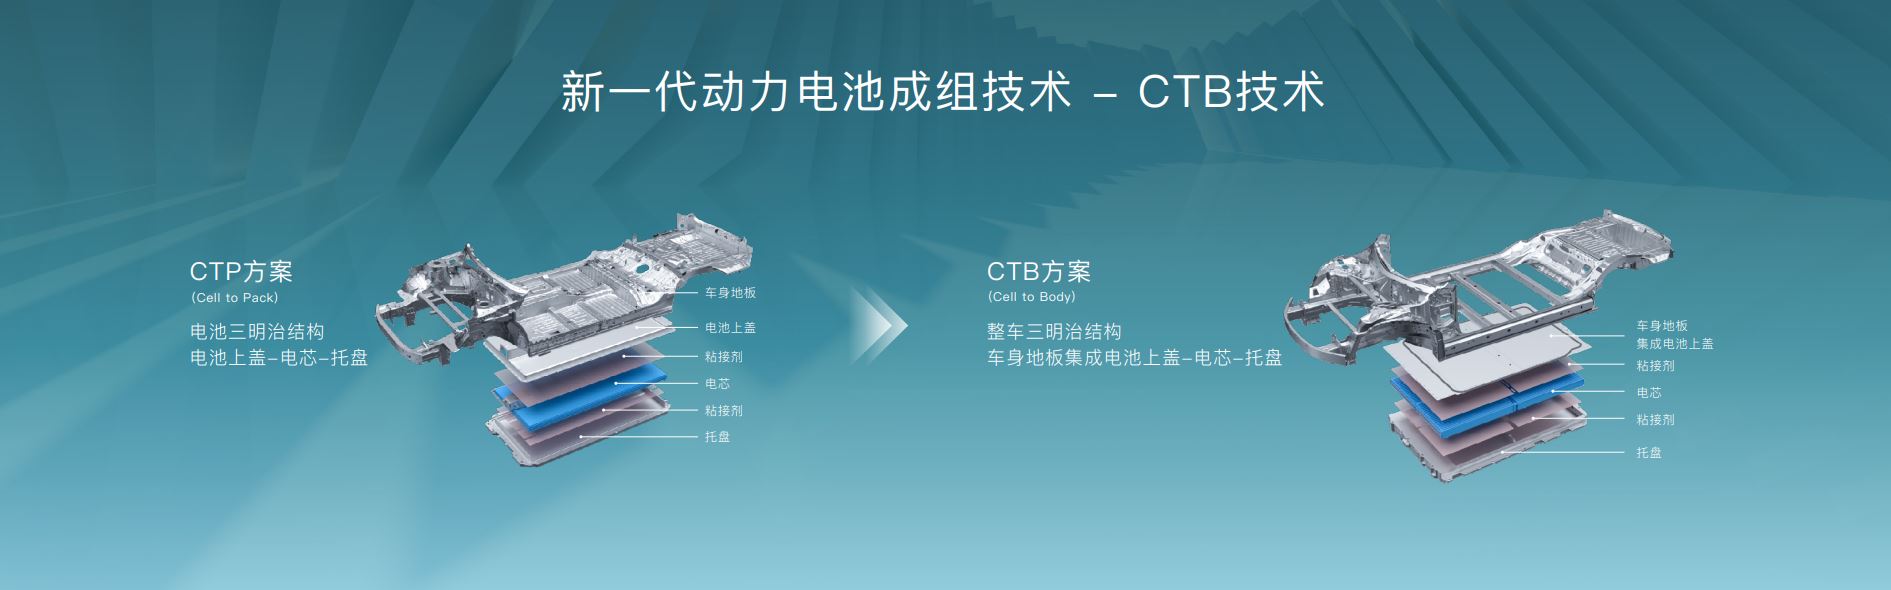 CTB技术图解。比亚迪供图